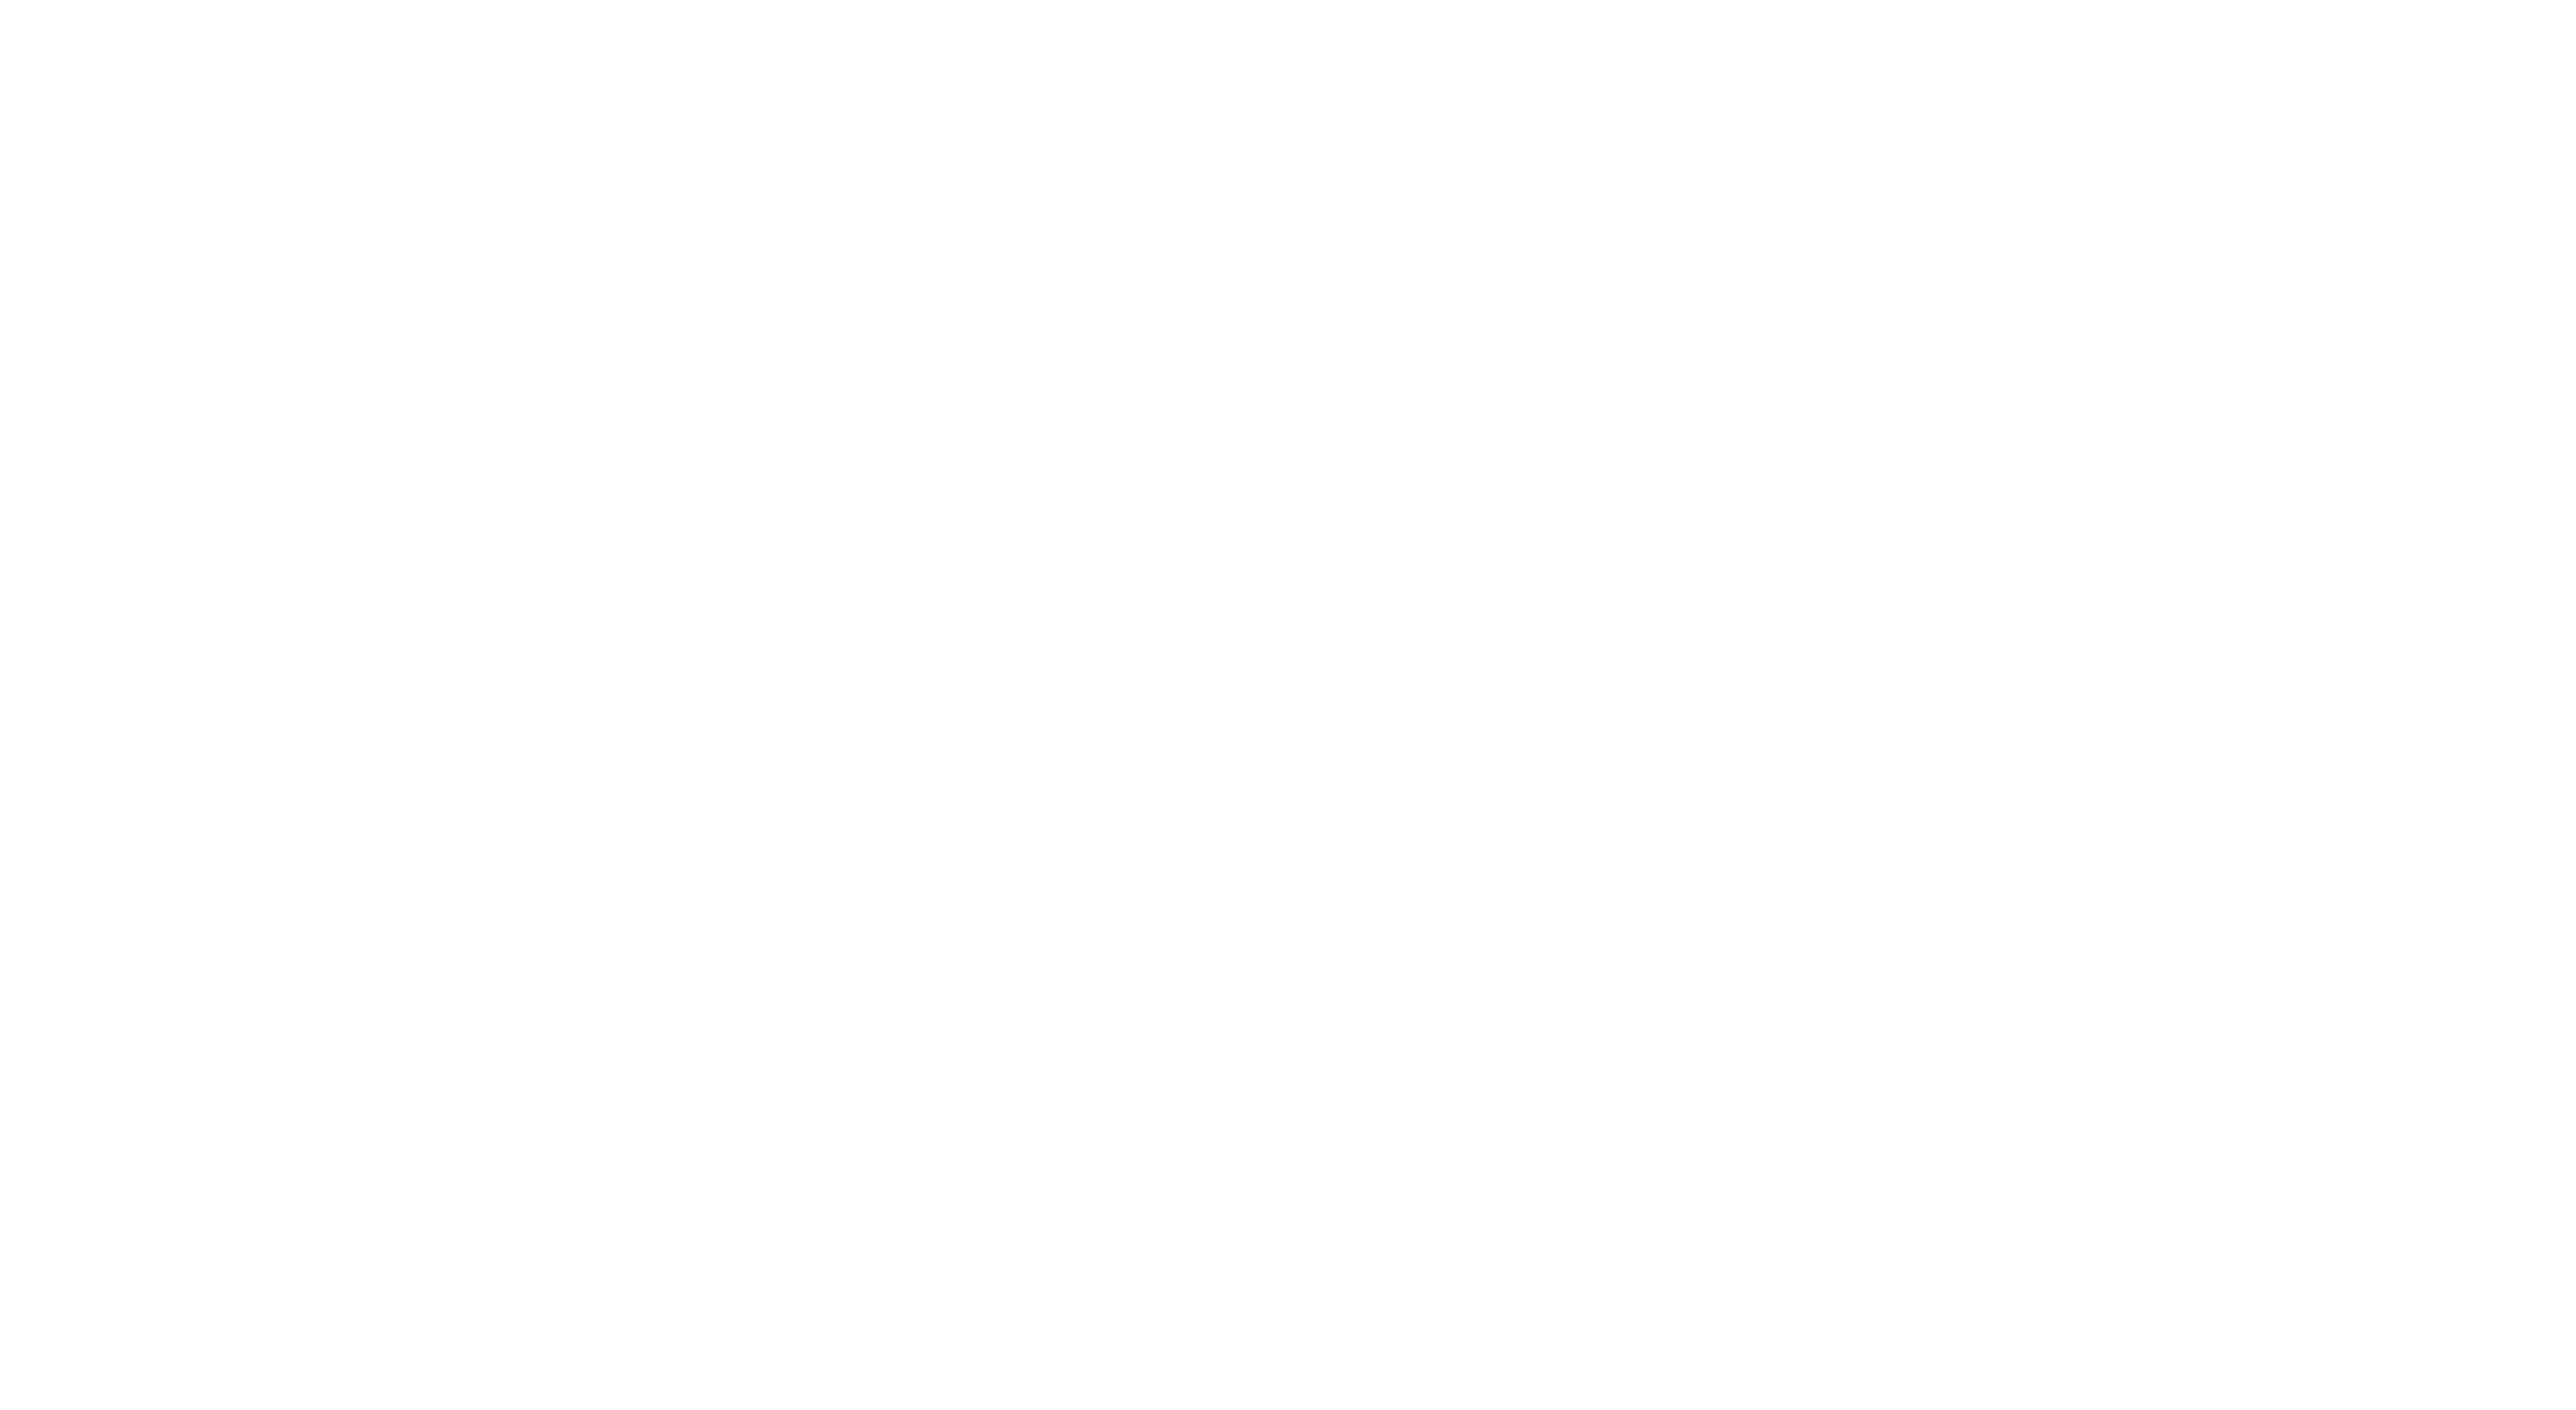 Cross_logo_2022_Wit